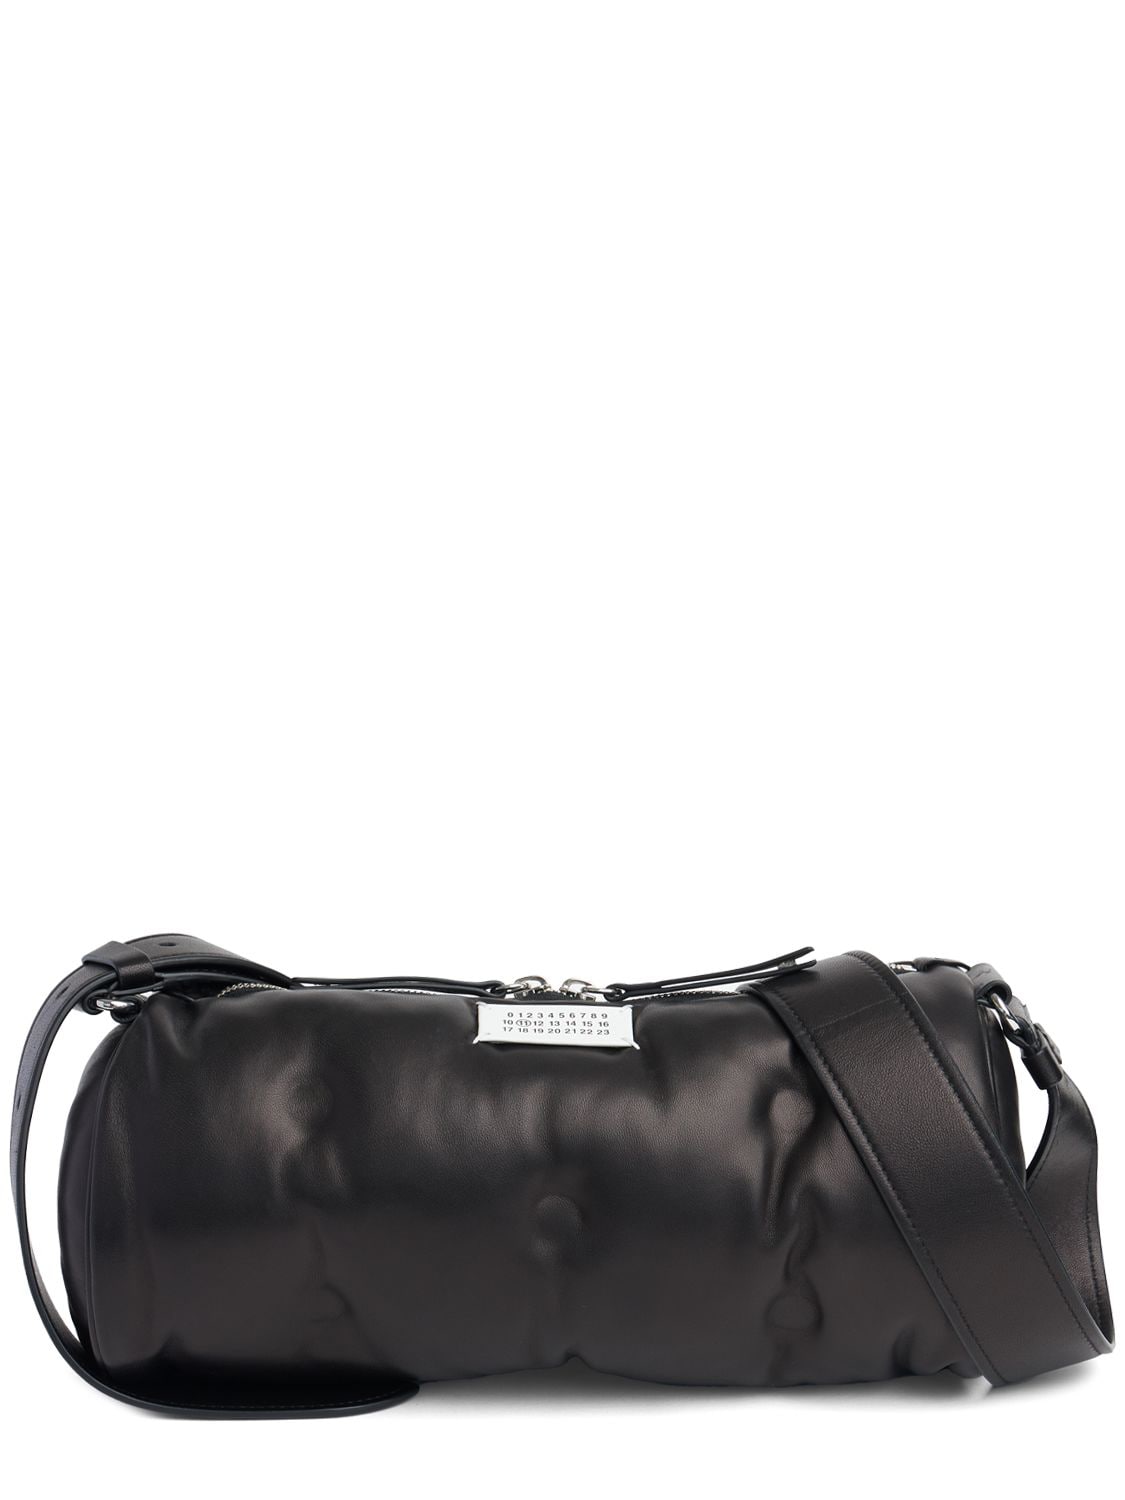 Image of Glam Slam Pillow Leather Shoulder Bag